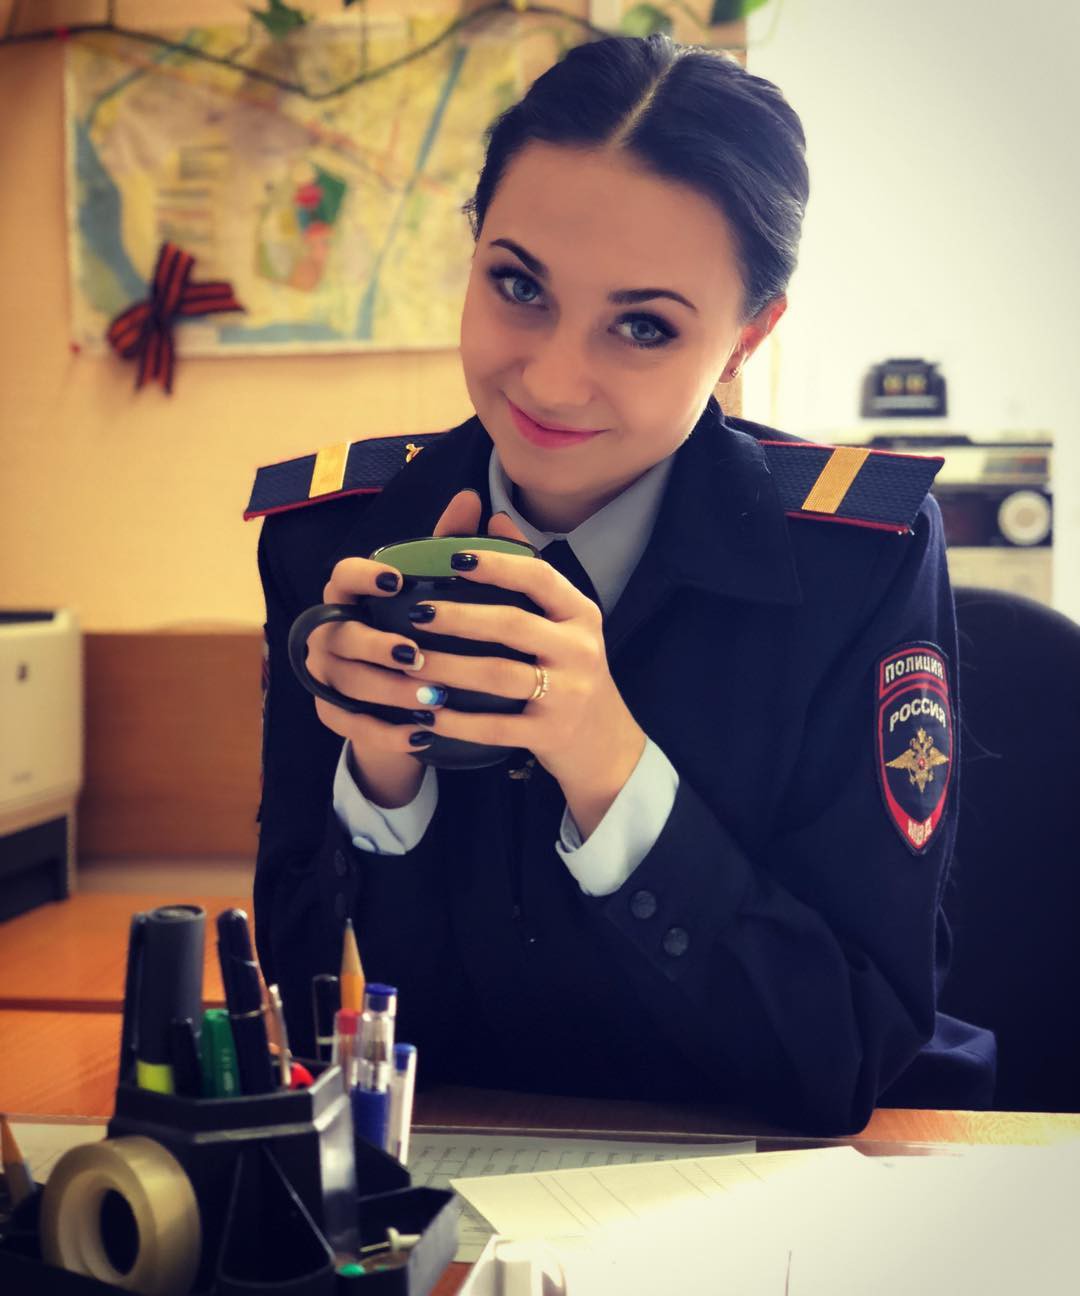 Fan bóng đá muốn vào tù sau khi chứng kiến nhan sắc xinh đẹp của nữ cảnh sát Nga - Ảnh 4.